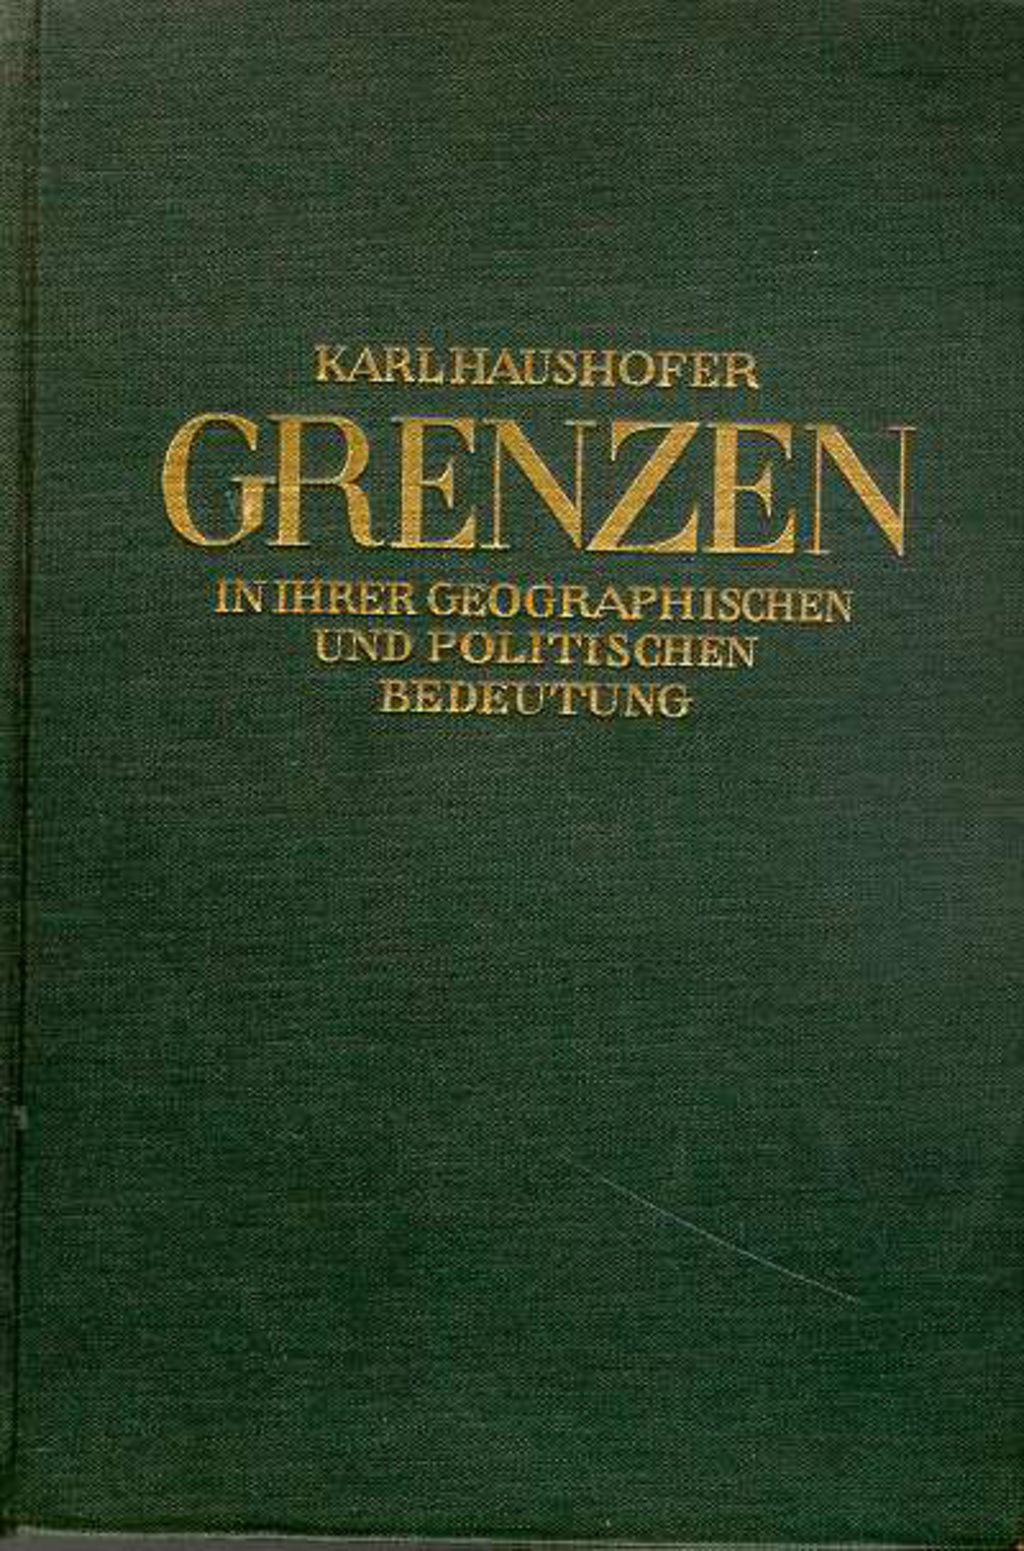 Buch: Haushofer, Karl "Grenzen in ihrer geographischen und politischen Bedeutung", 1927